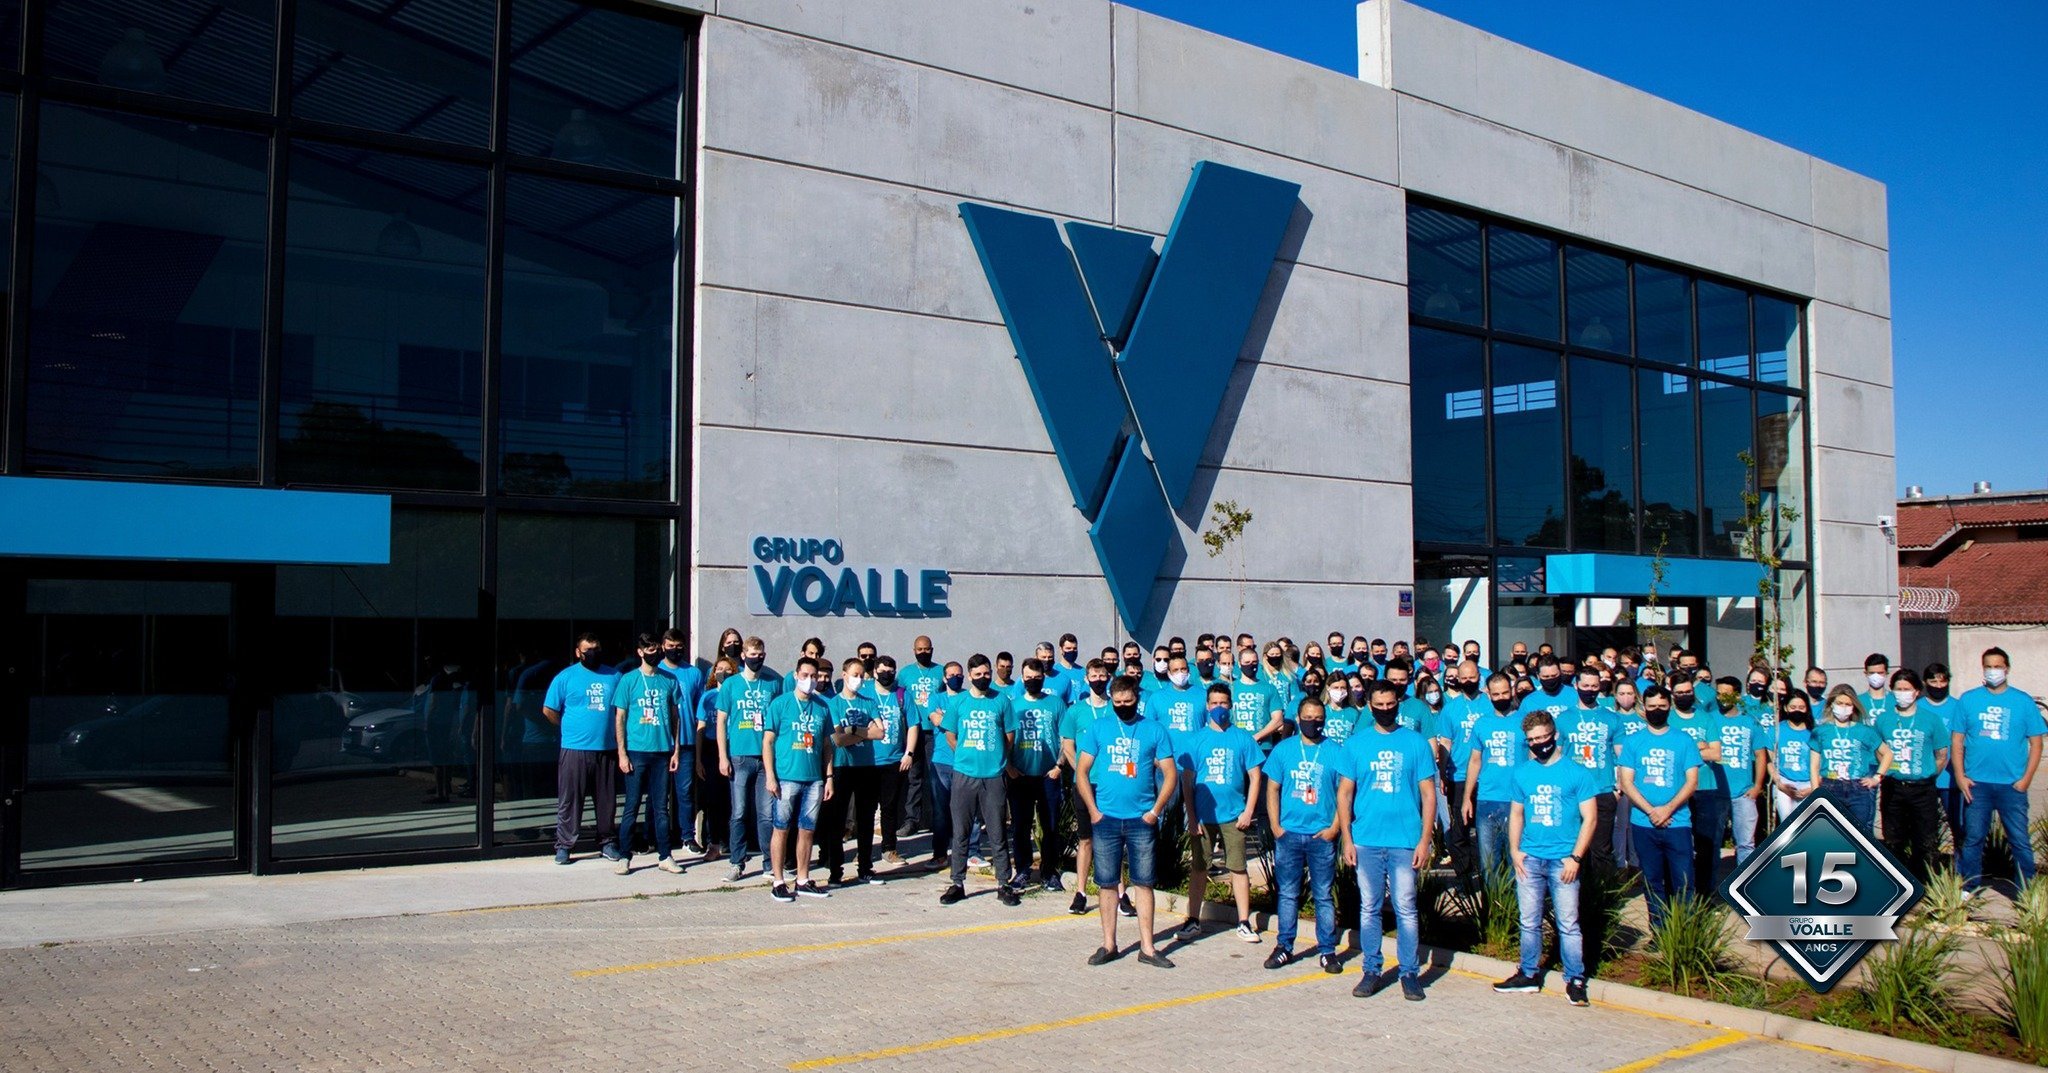 Grupo Voalle - A Syntesis IT é uma das cinco empresas que fazem